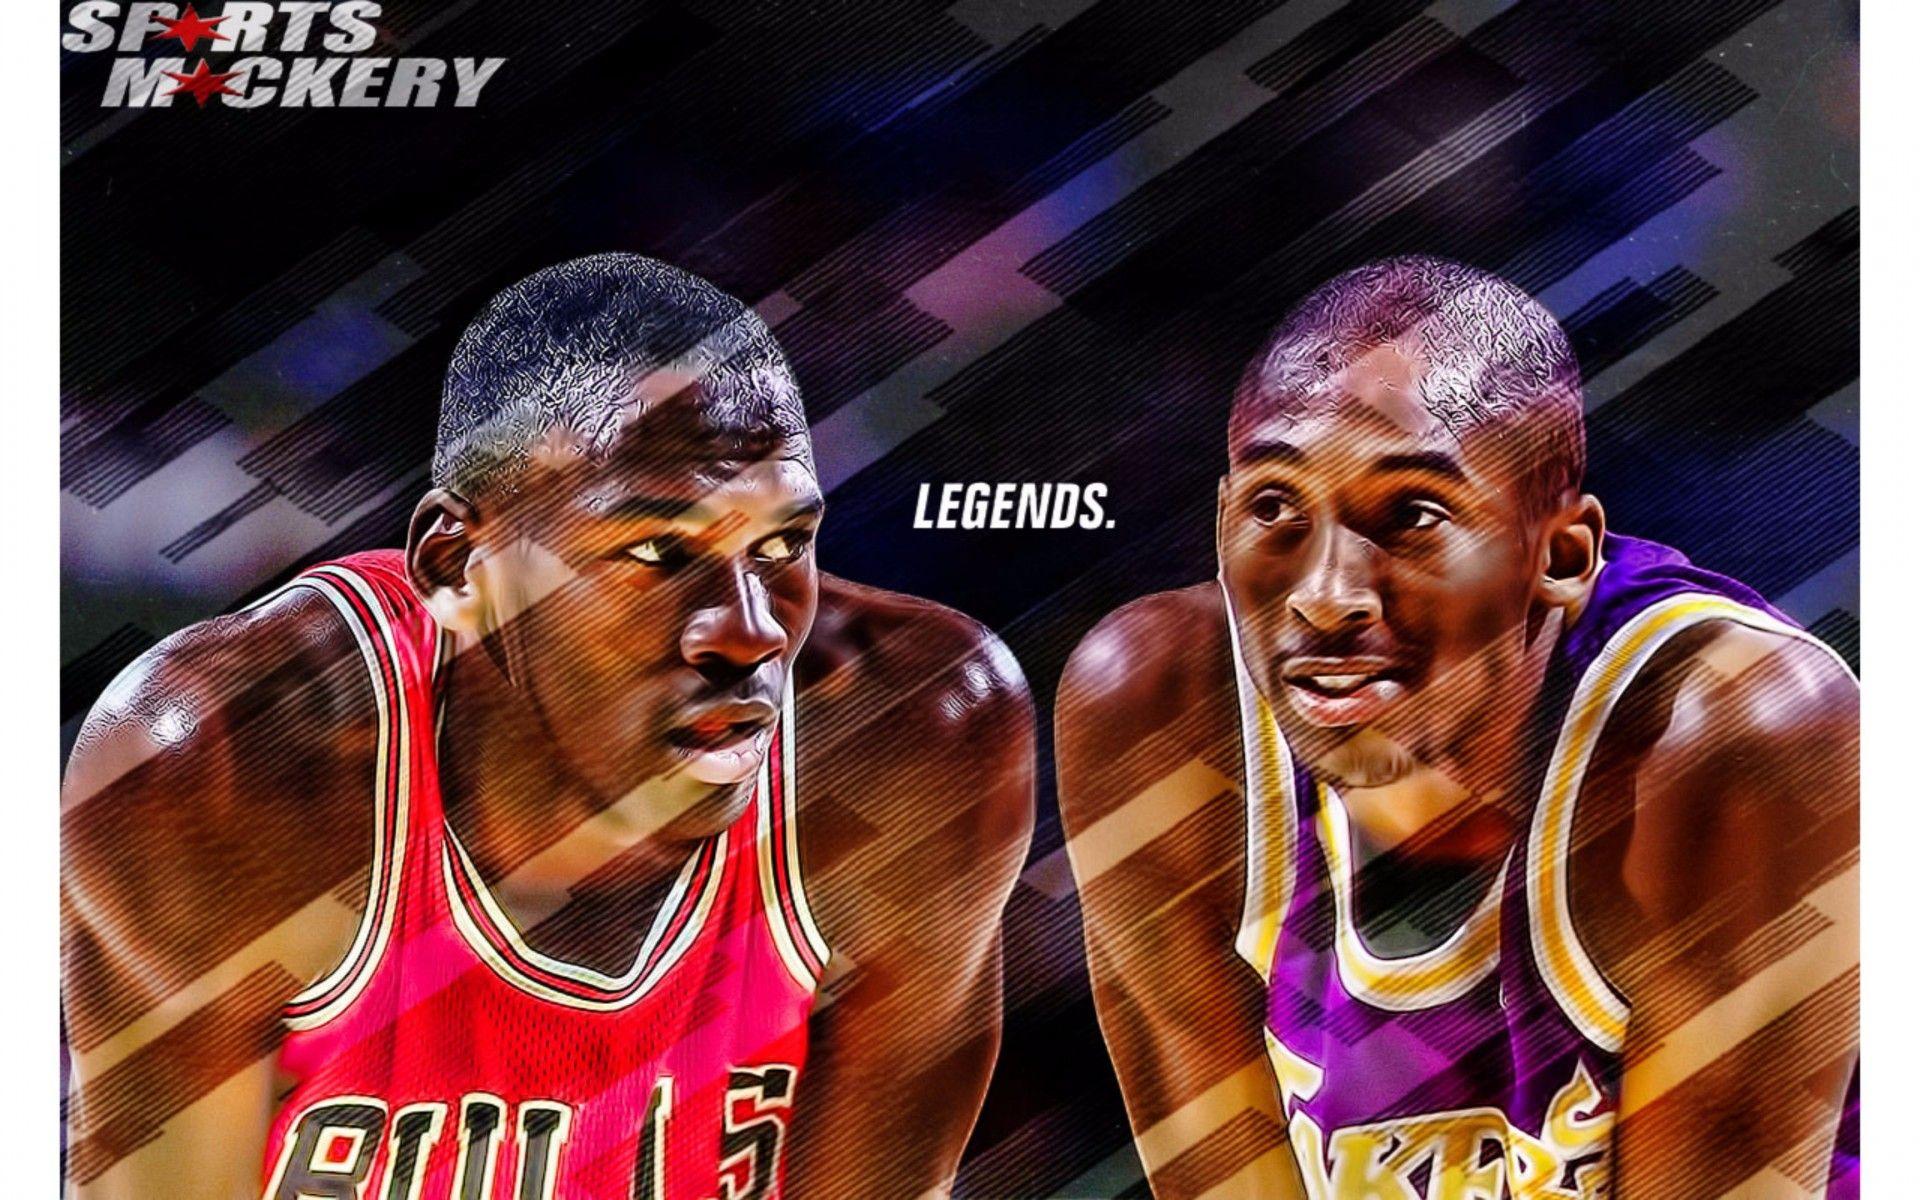 Kobe Bryant and Michael Jordan 4K Wallpaper. Free 4K Wallpaper